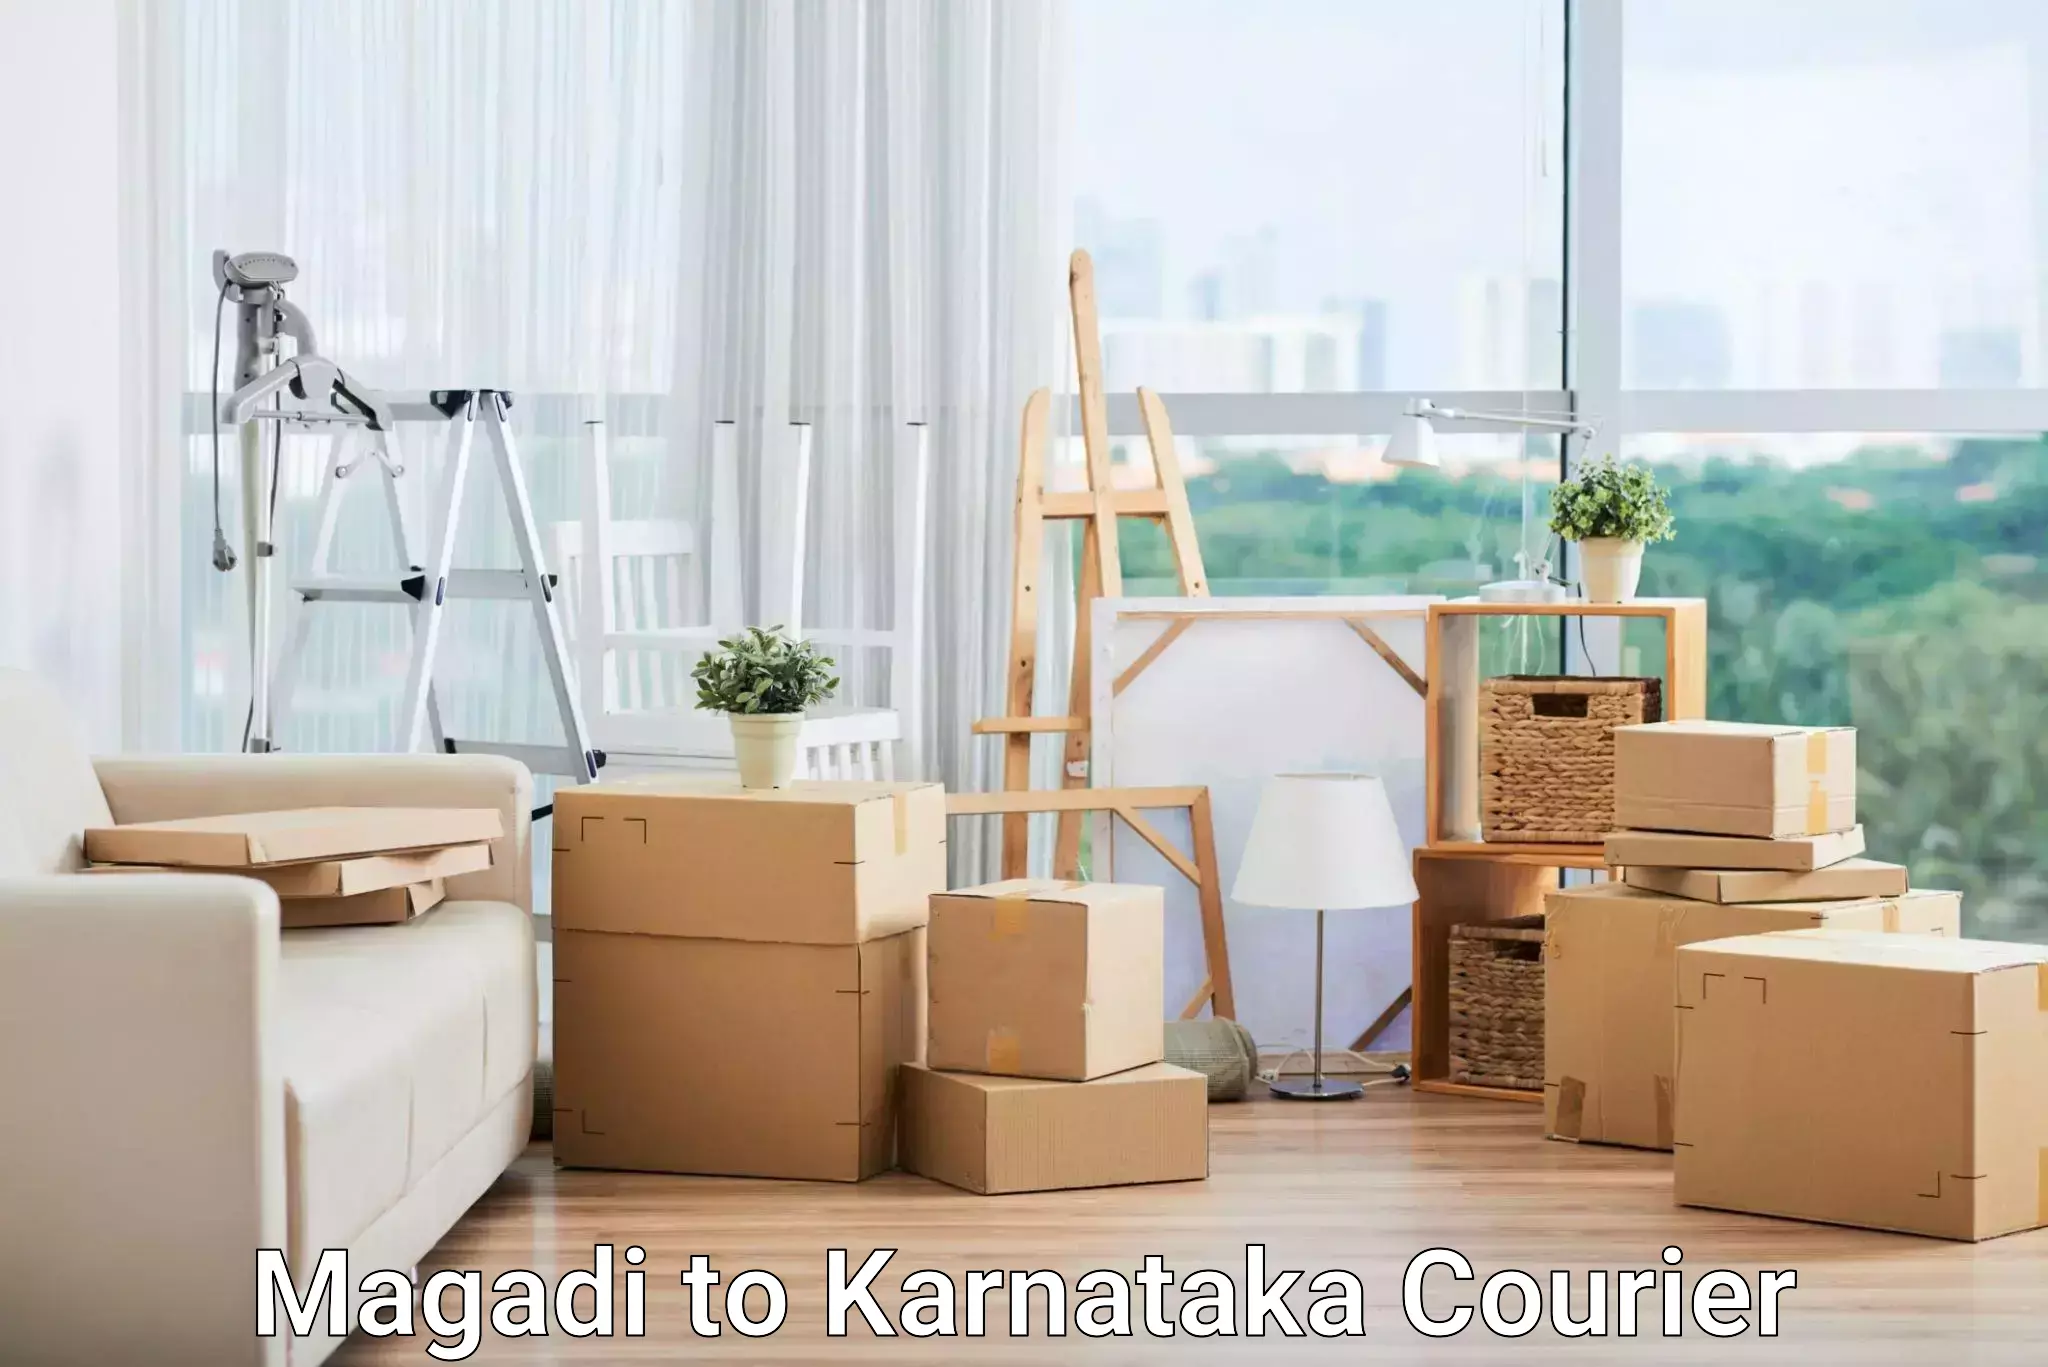 Reliable delivery network Magadi to Karnataka